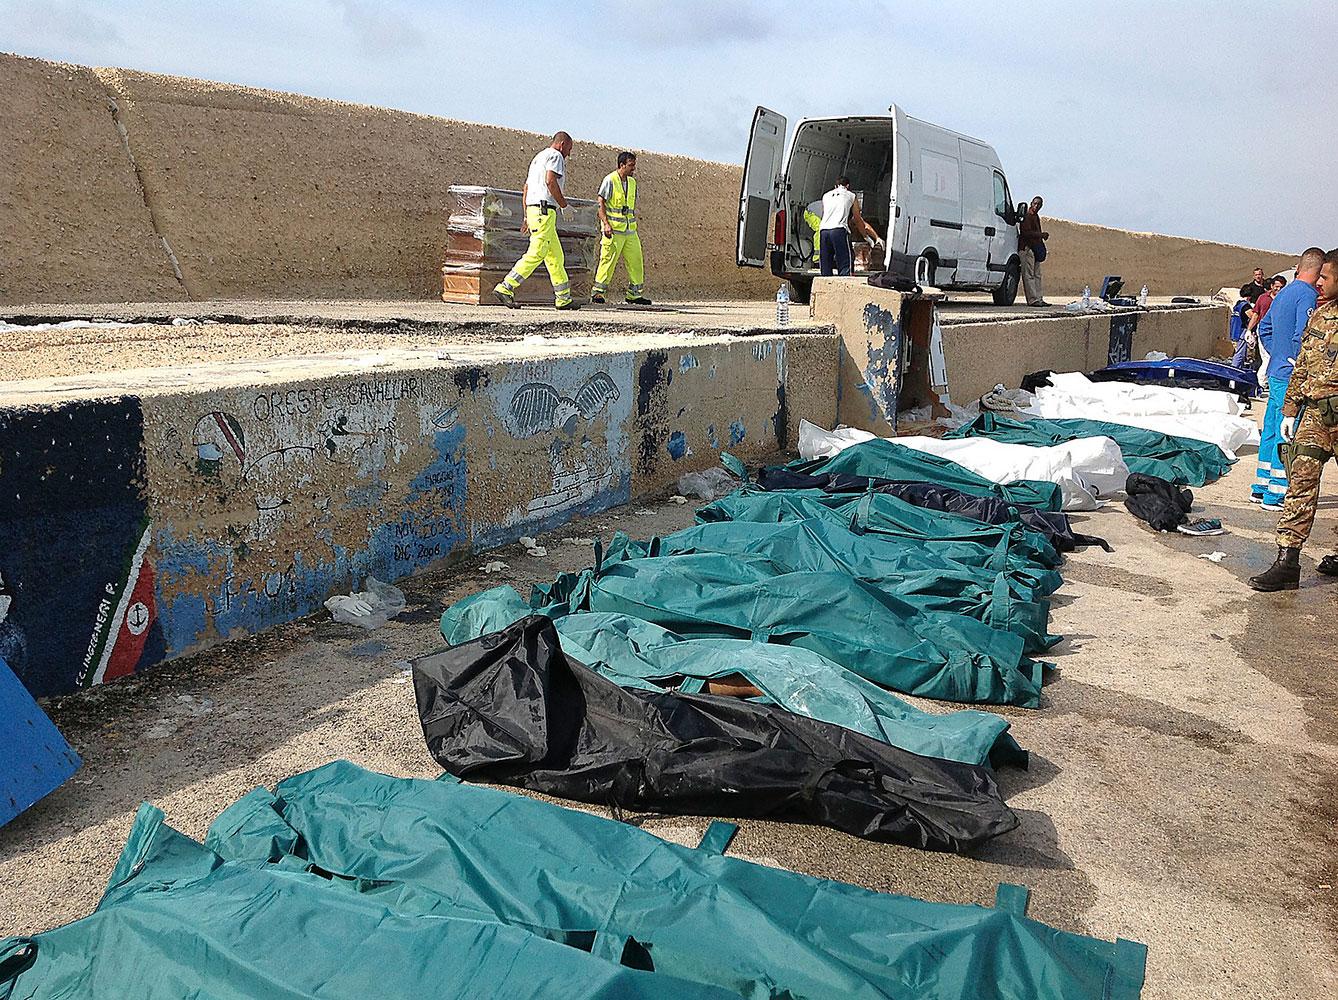 Farlig flykt  Europa har under lång tid stängt sina gränser för flyktingar. Människor tvingas därför fly på farliga vägar och i osäkra båtar.  I går kapsejsade ett fartyg vid Lampedusa i Italien. Minst 133 personer har dött.